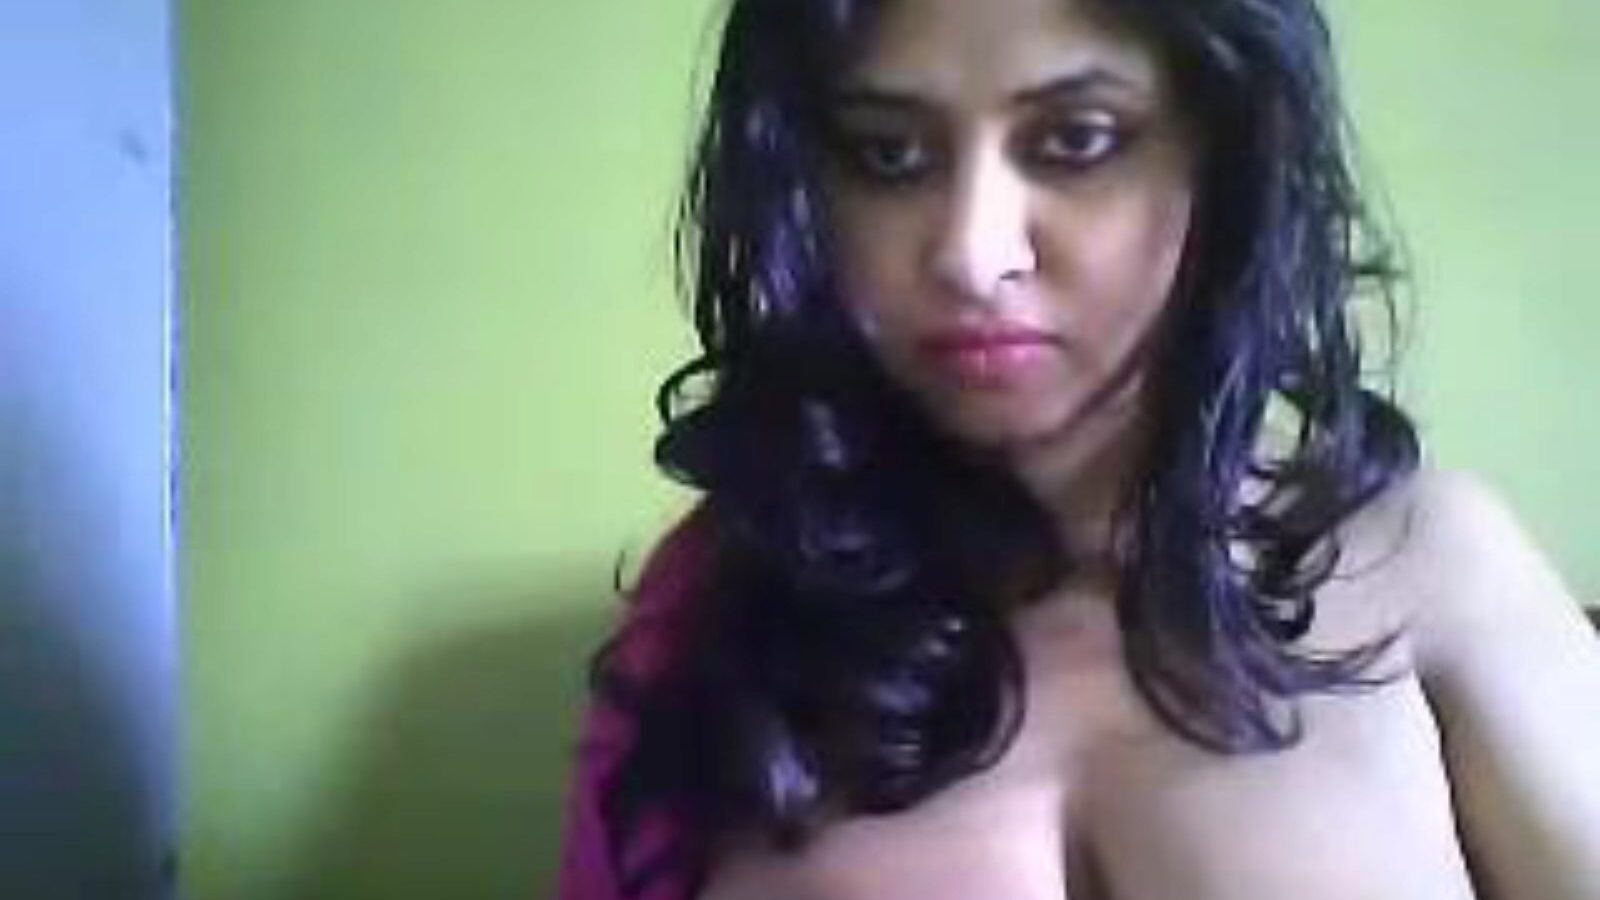 desi hot cam mor jeg vil gerne kneppe deepa, gratis indisk porno 27: xhamster se desi hot cam mor Jeg vil gerne kneppe deepa episode på xhamster, det største tilslutningsrør websted med masser af gratis-for-alle asiatiske indiske & xxx hot porno videoer